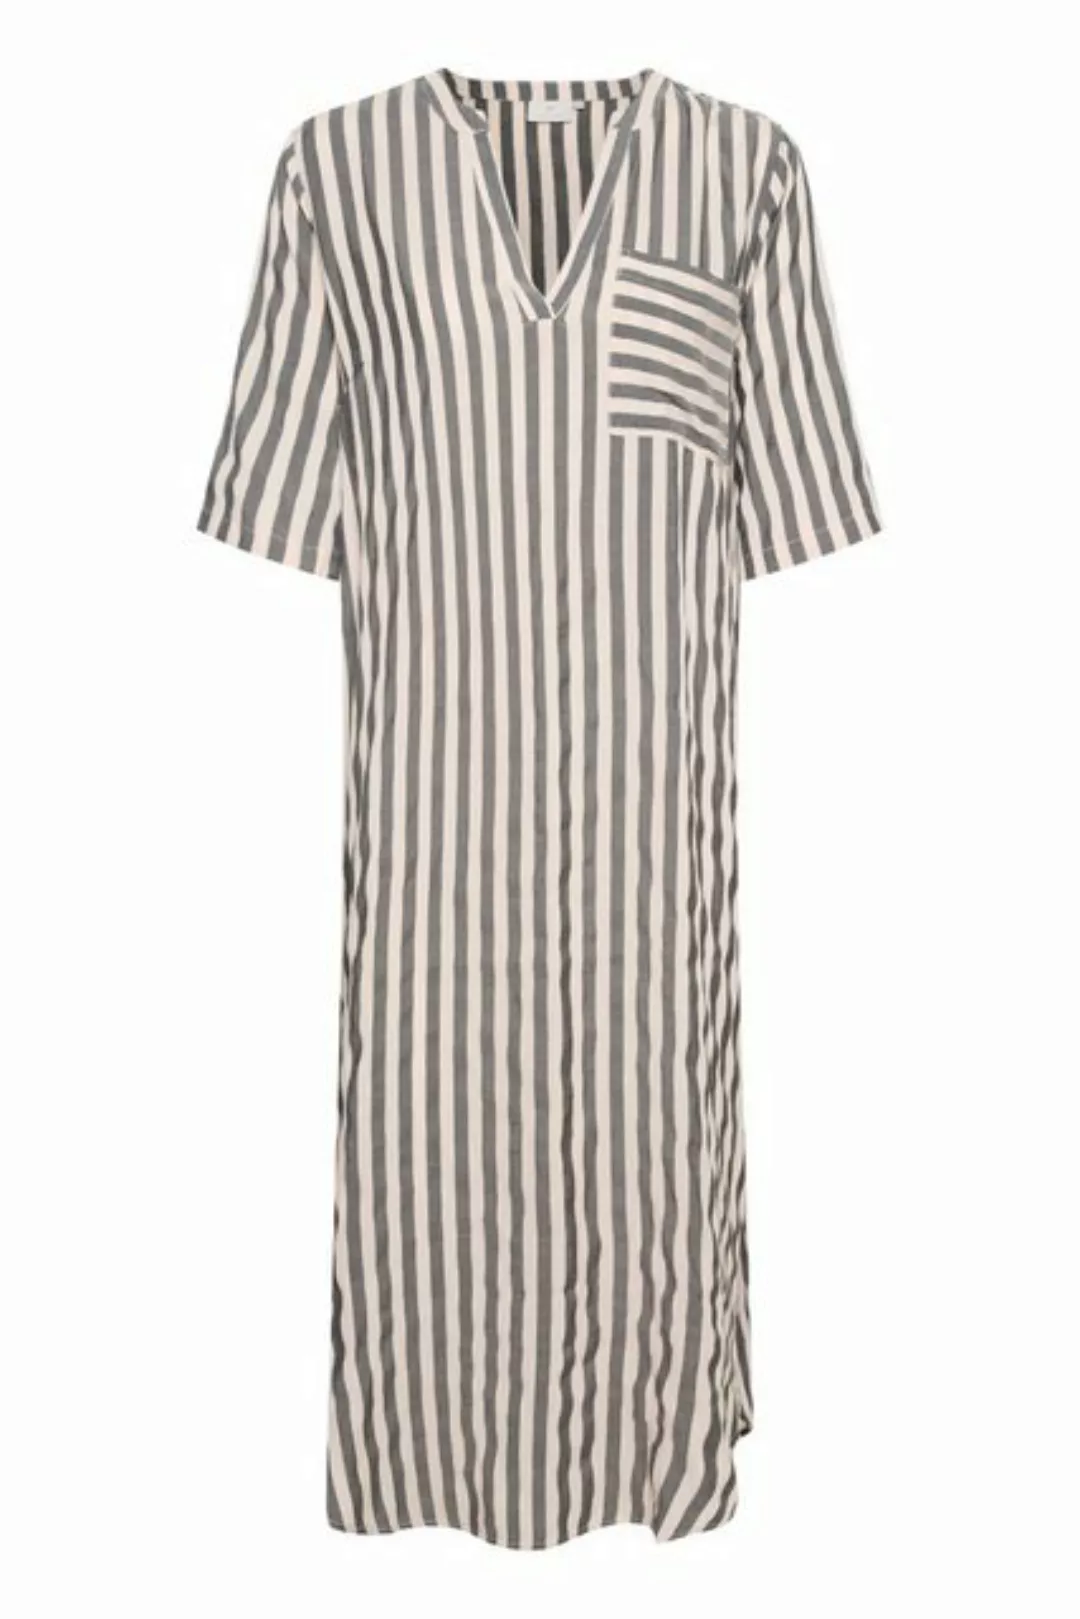 KAFFE Jerseykleid Kleid KAsummer günstig online kaufen